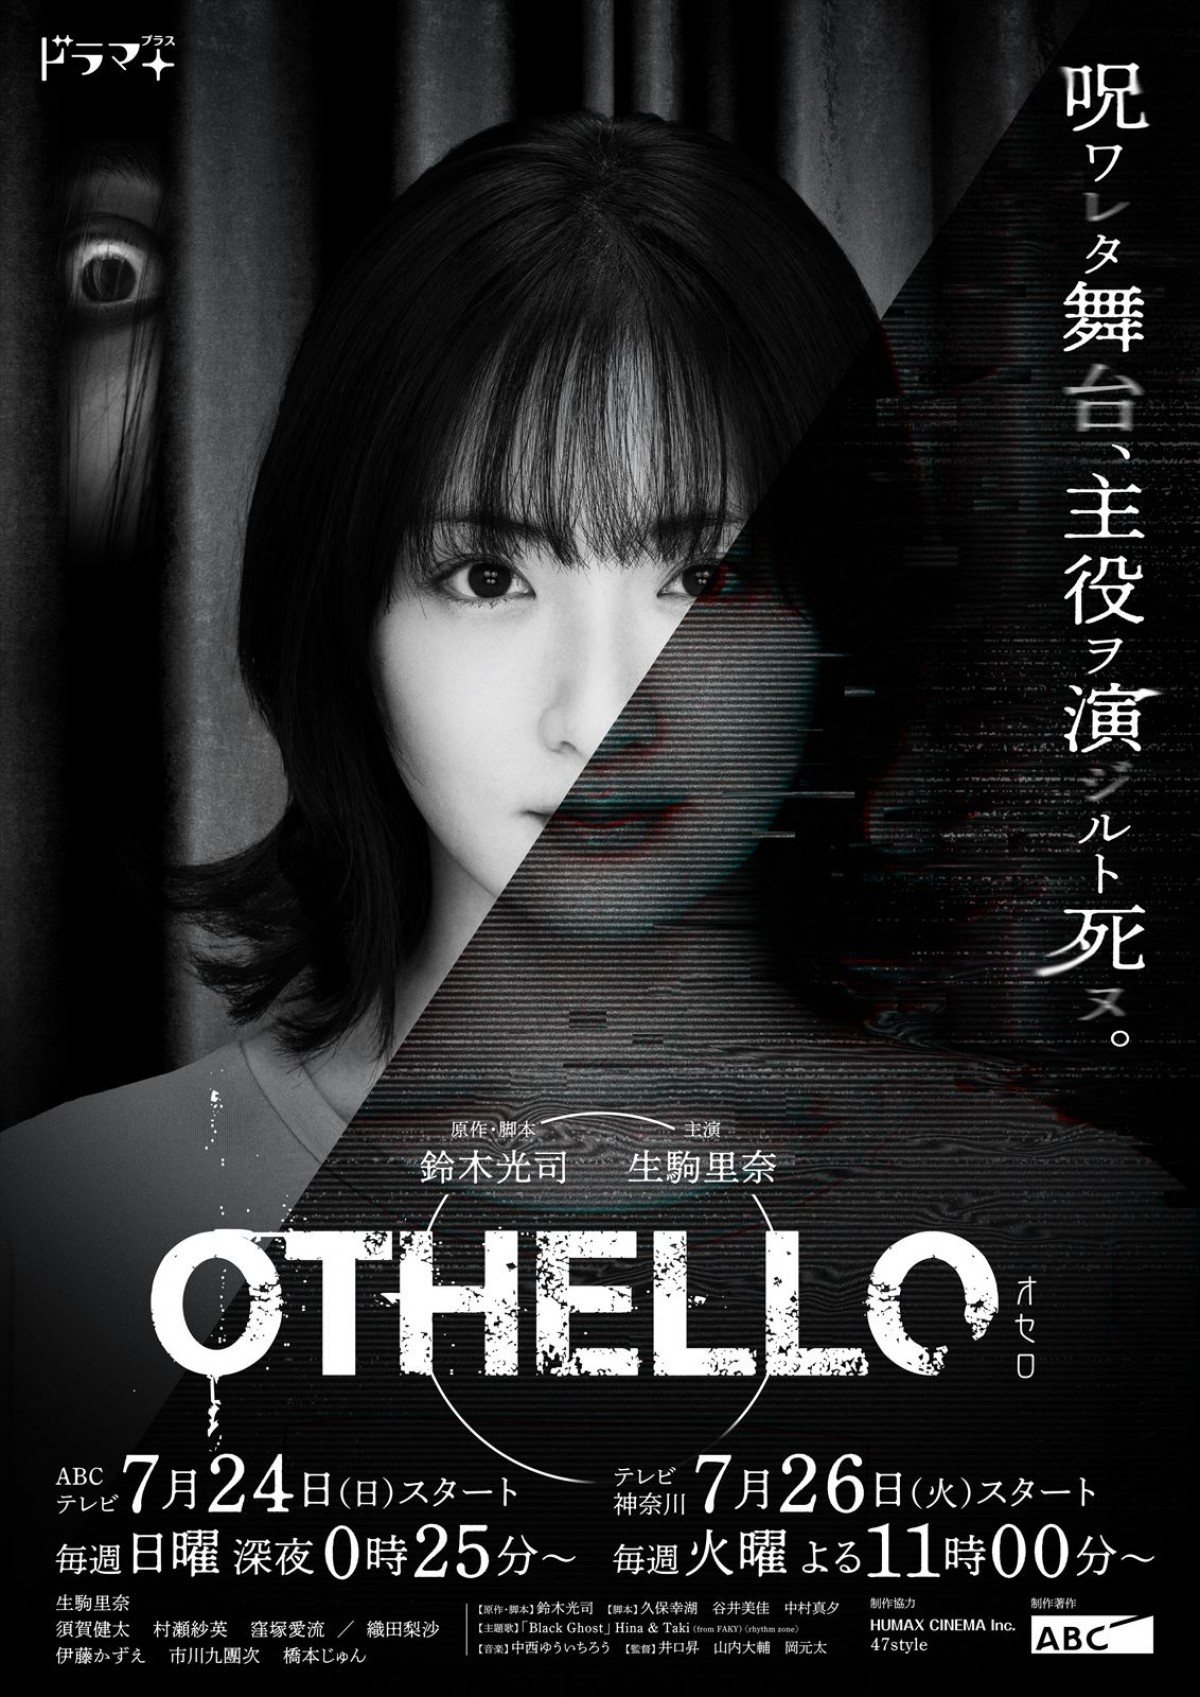 ドラマ『OTHELLO』メインビジュアル